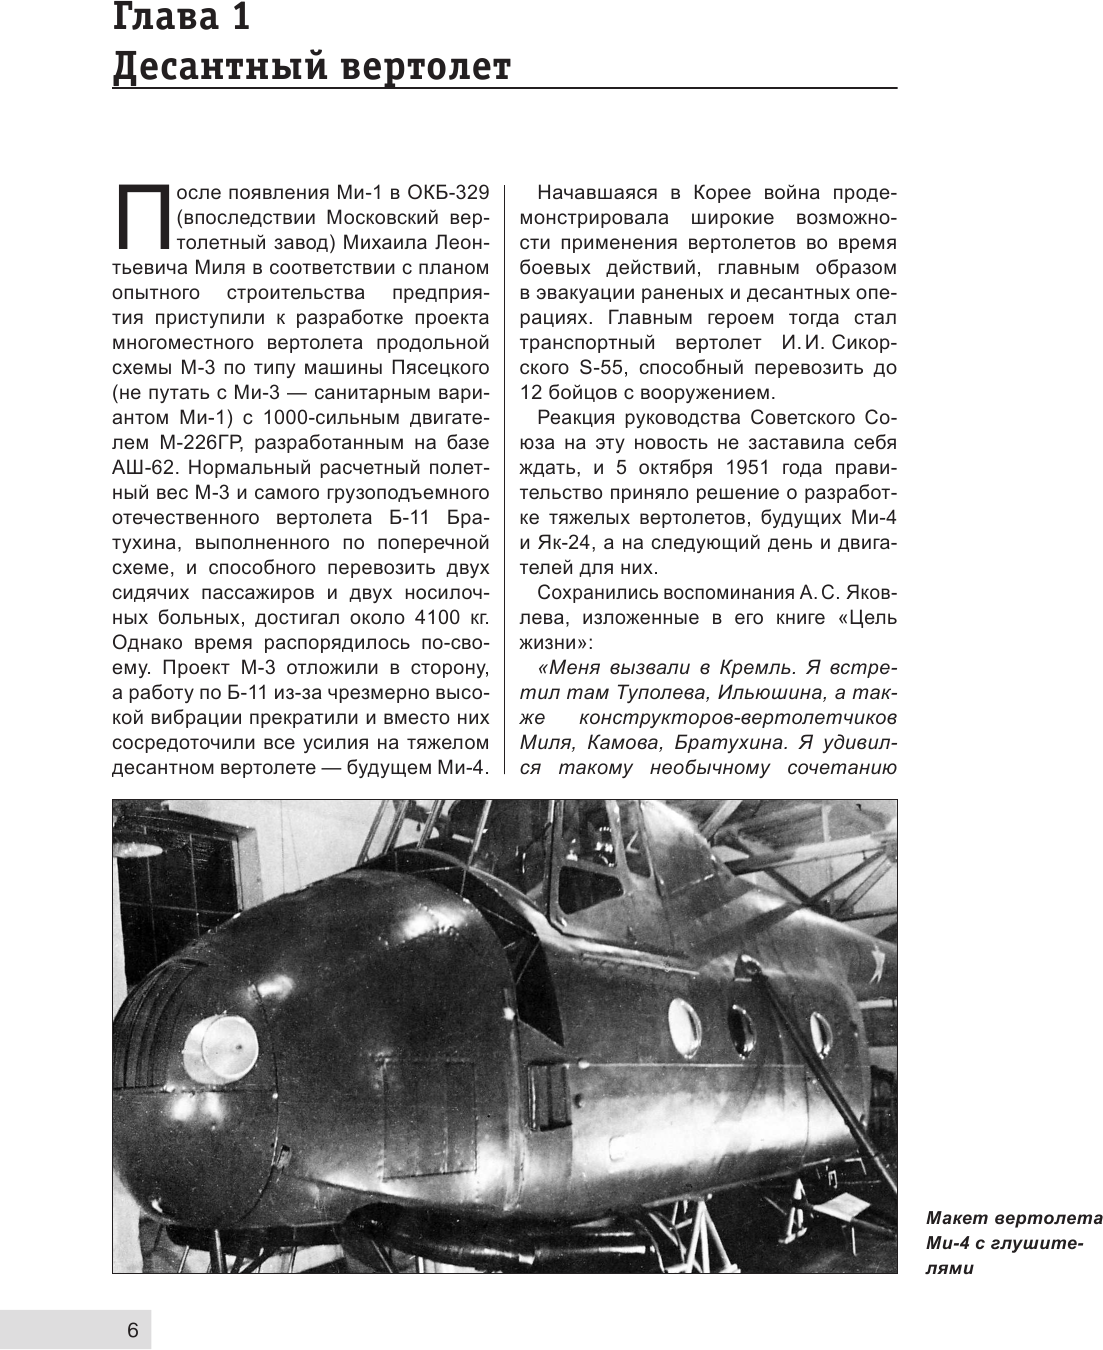 Ми-4 и его модификации. Первый отечественный военно-транспортный вертолет - фото №9